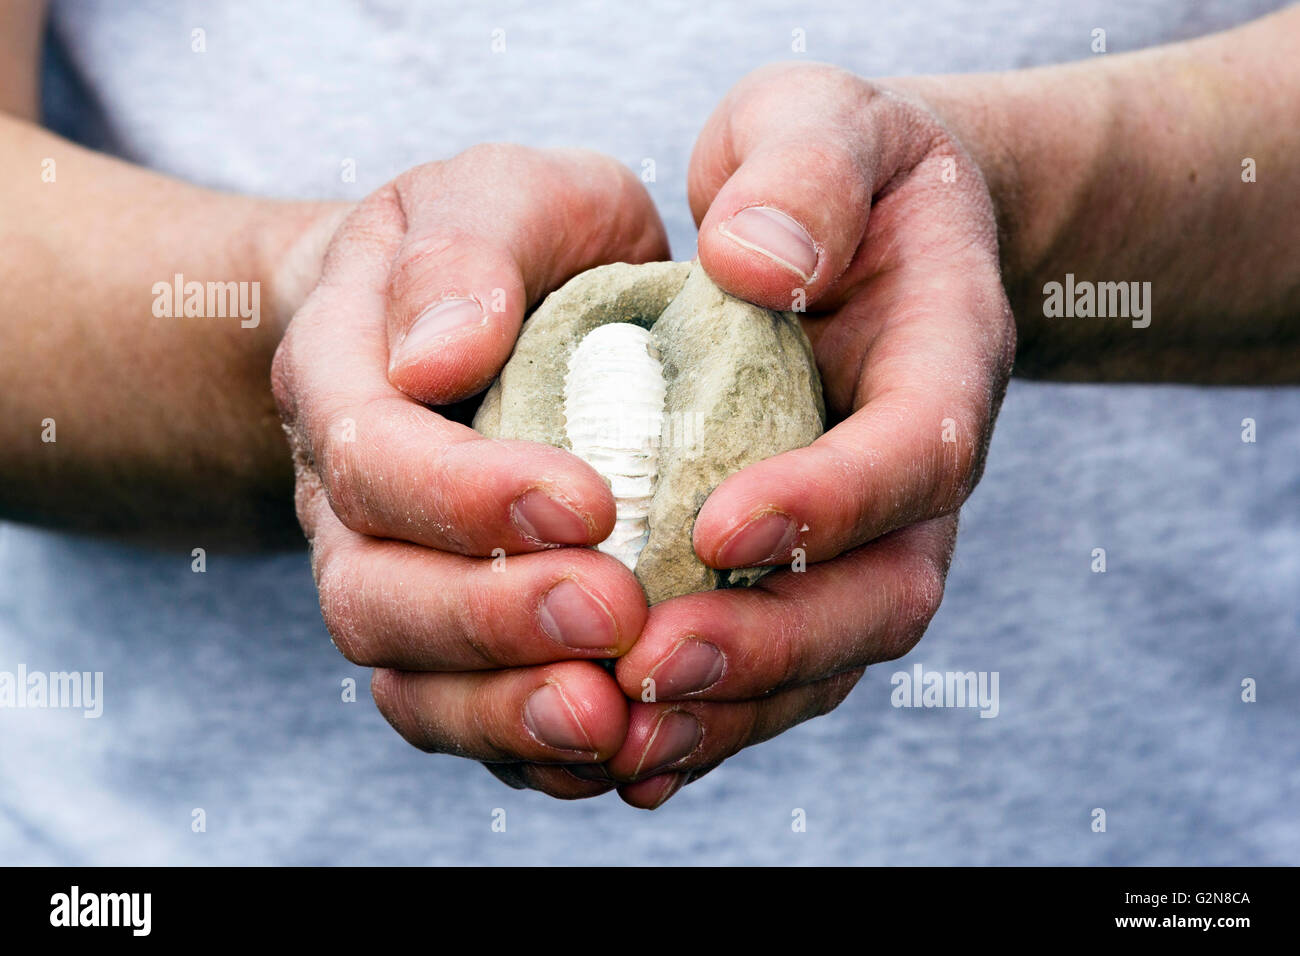 Hombre sujetando una concreción que contenga un fósil de ammonites Foto de stock